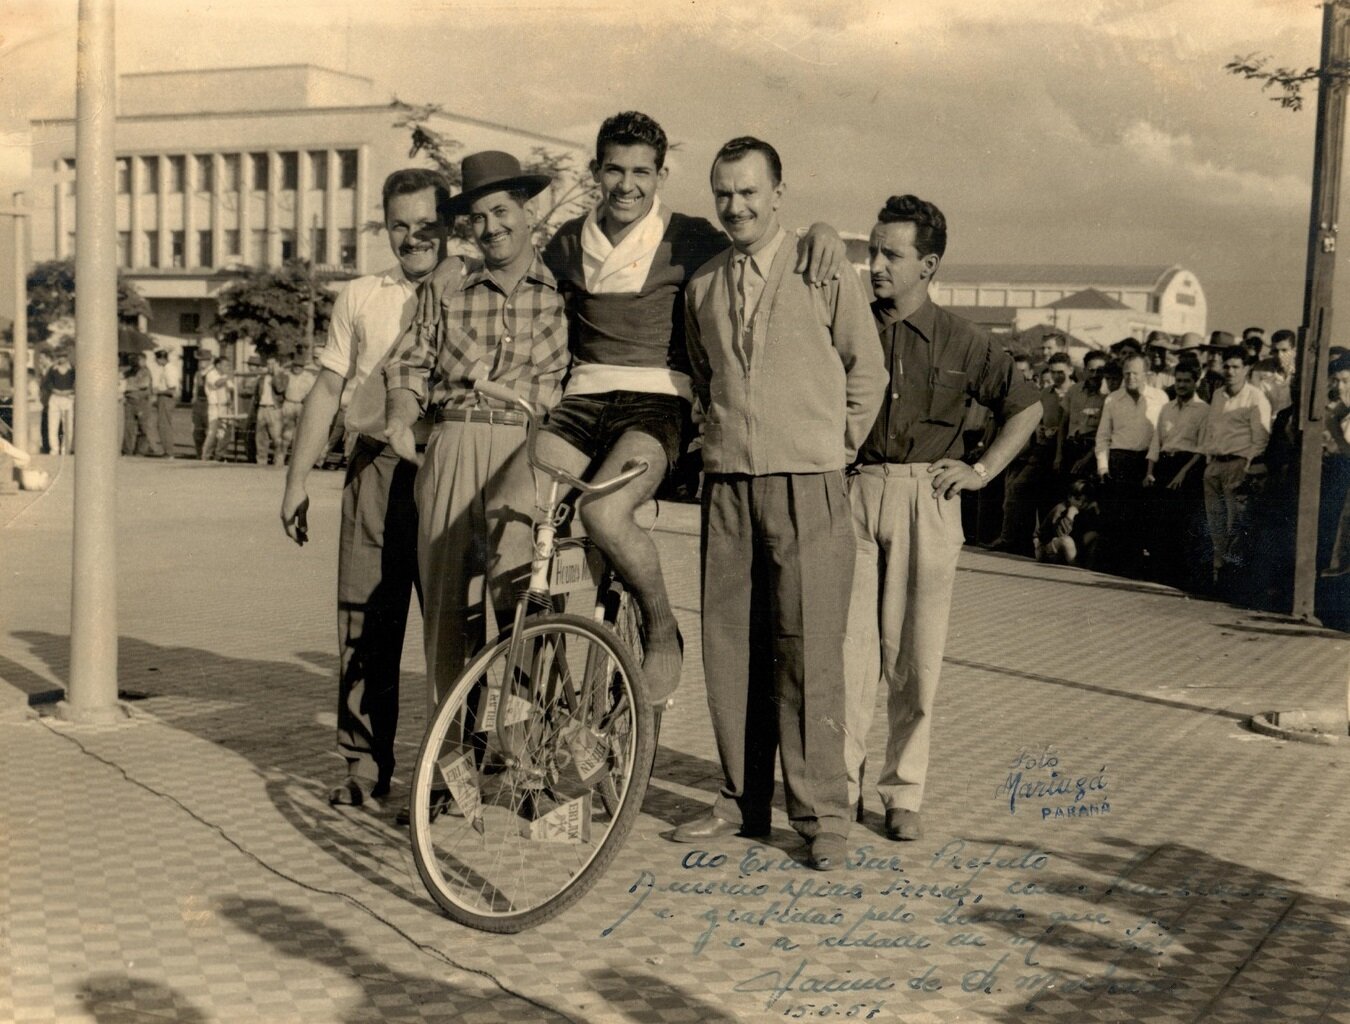 Recorde sobre uma bicicleta pedalando para trás - 1957